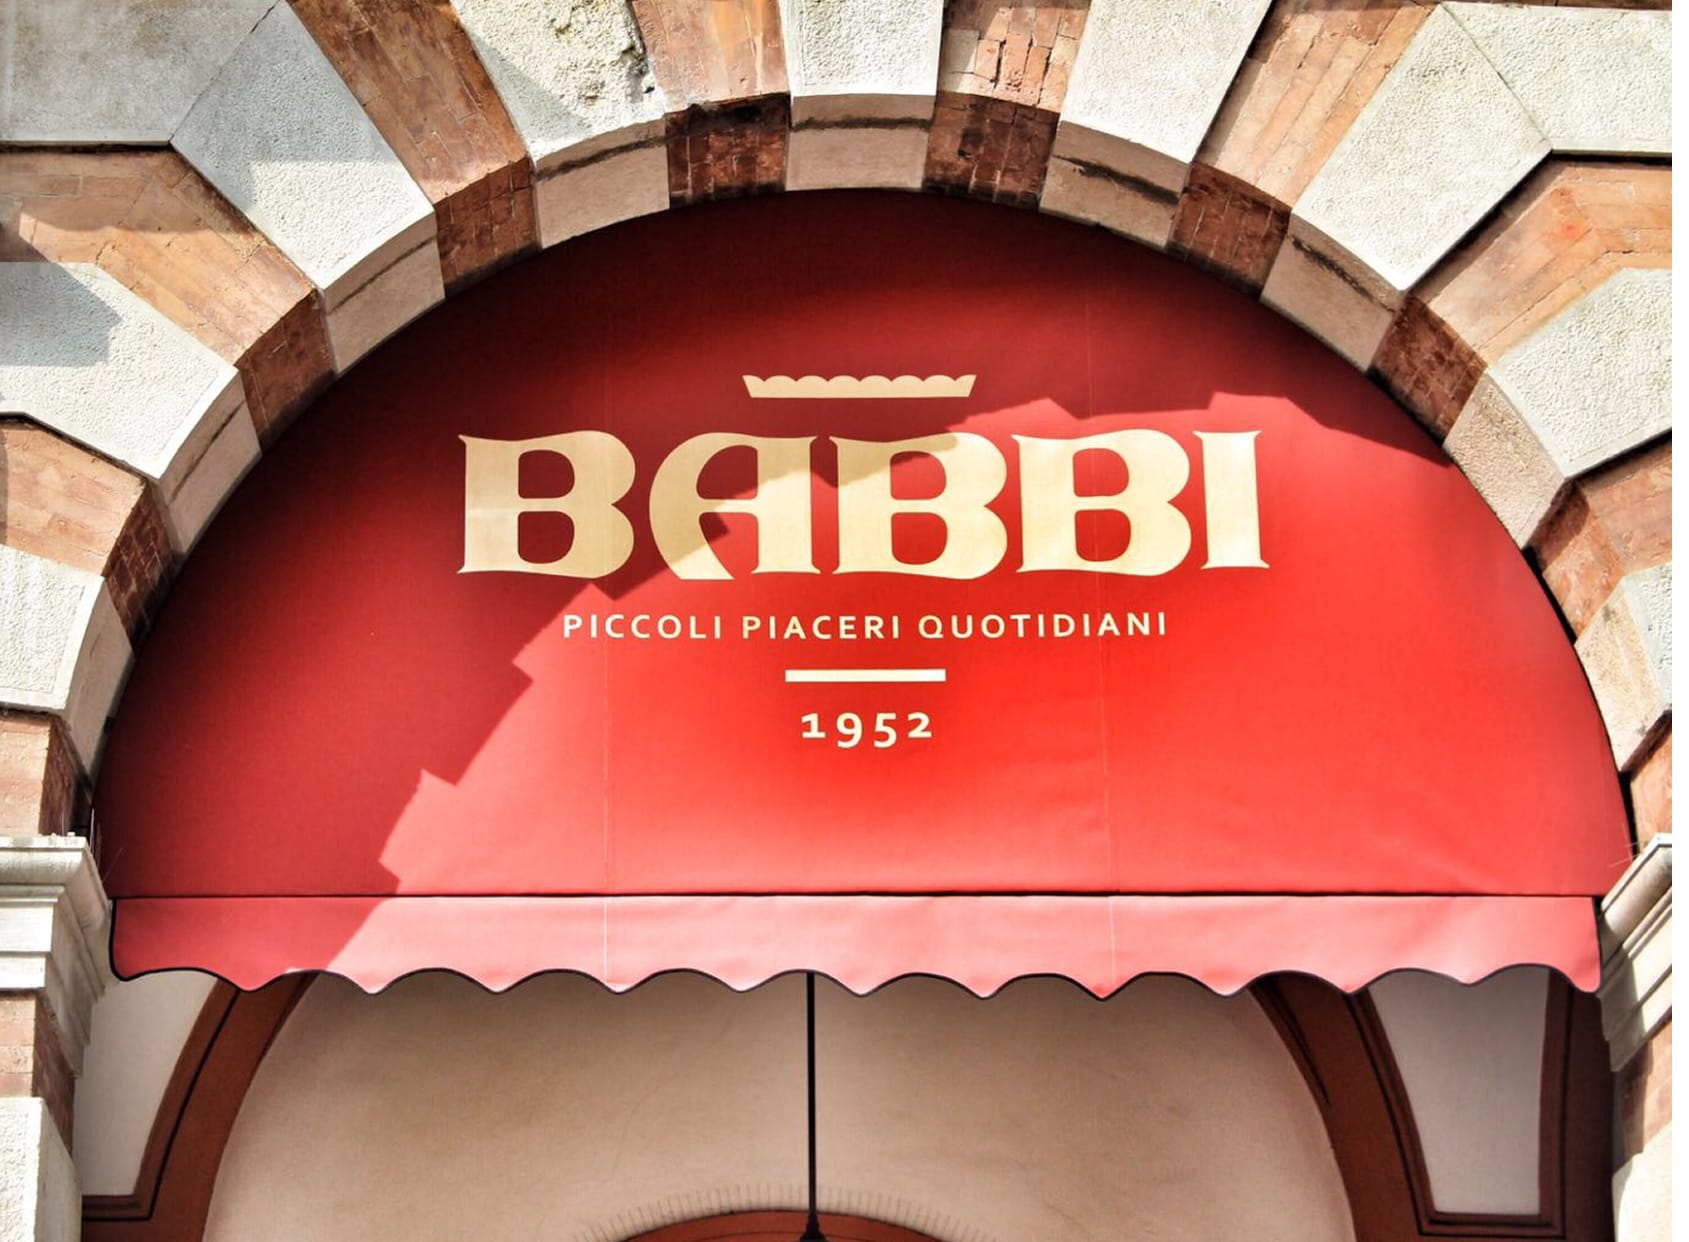 Babbi Café